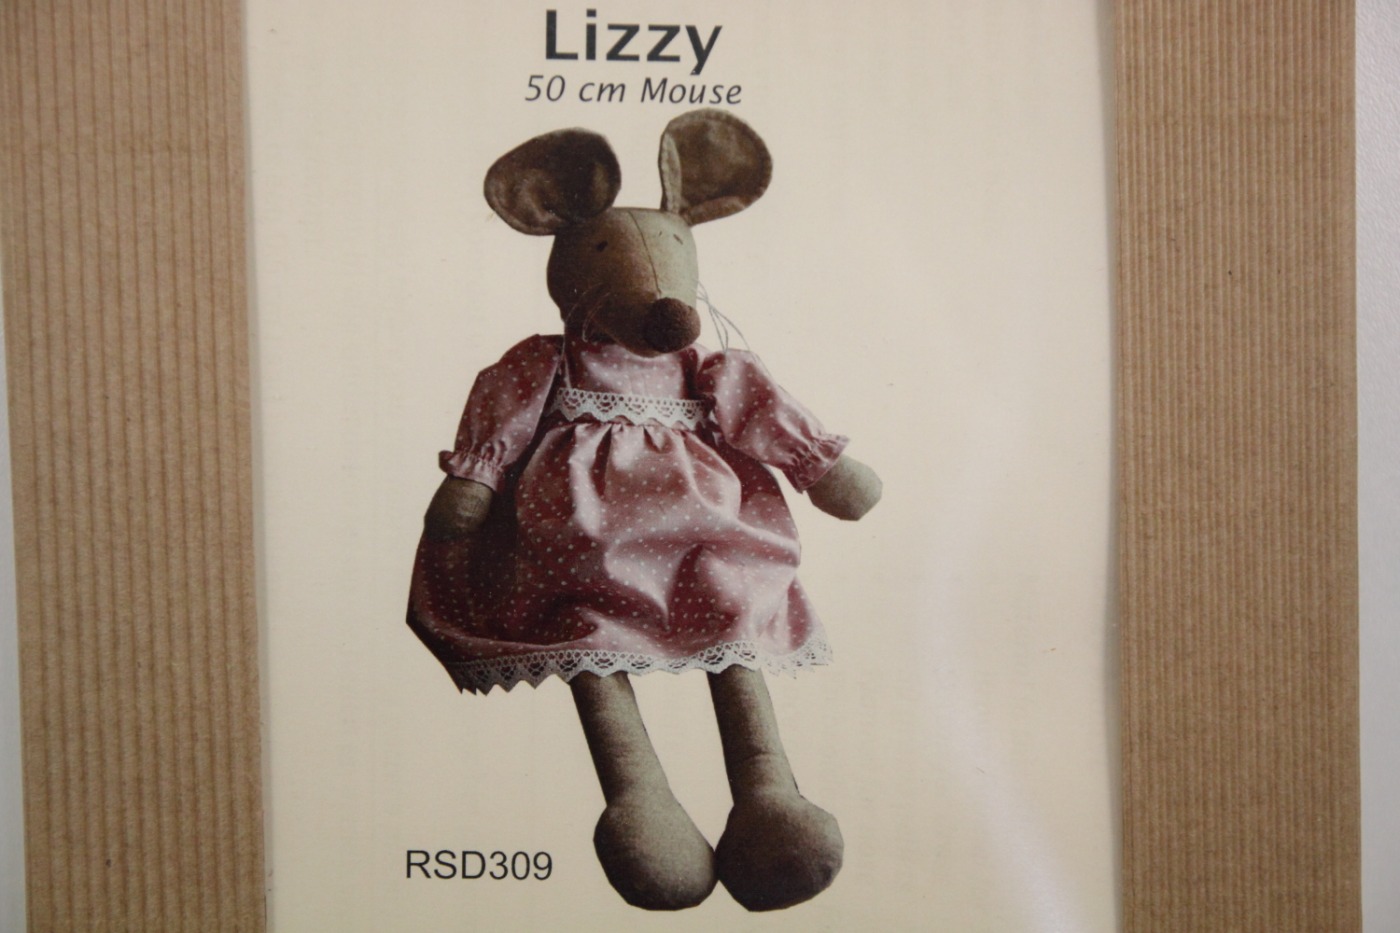 Pakketje-Lizzy-meisjesmuis Lizzy-50 cm g